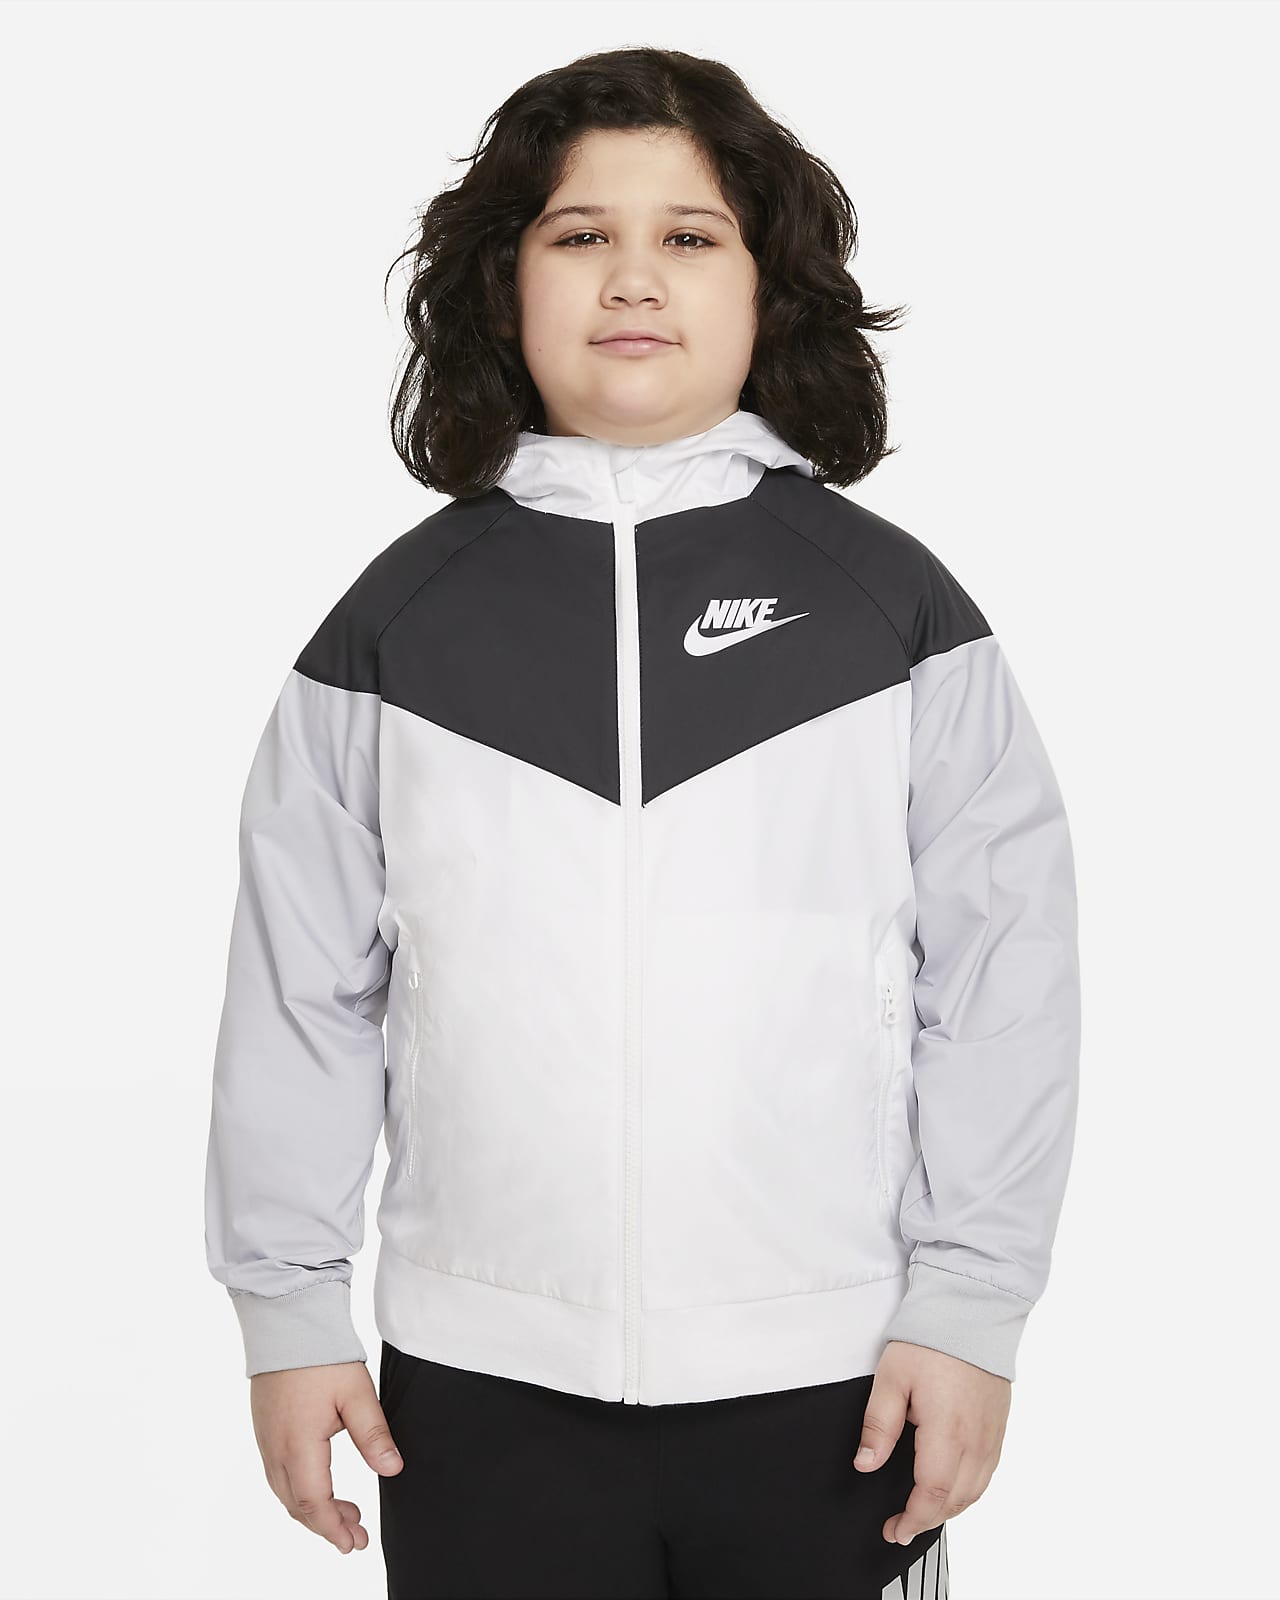 Volná bunda Nike Sportswear Windrunner s kapucí a délkou po boky pro větší děti (chlapce) (rozšířená velikost)